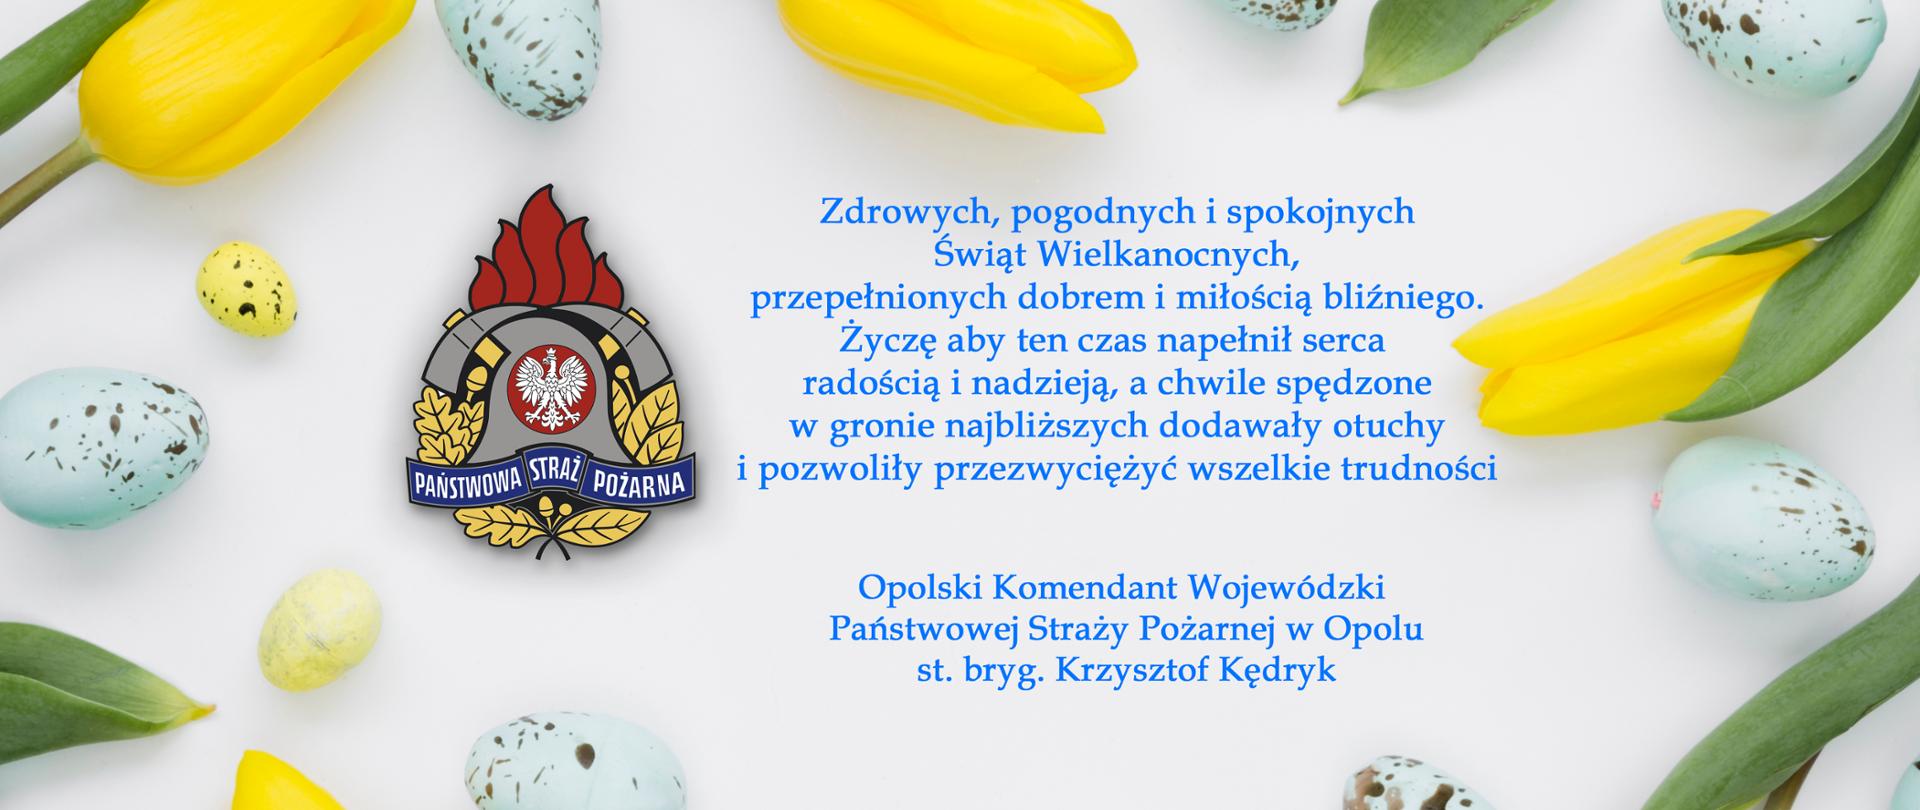 Życzenia na Święta Wielkanocne od Opolskiego Komendanta Wojewódzkiego PSP w Opolu